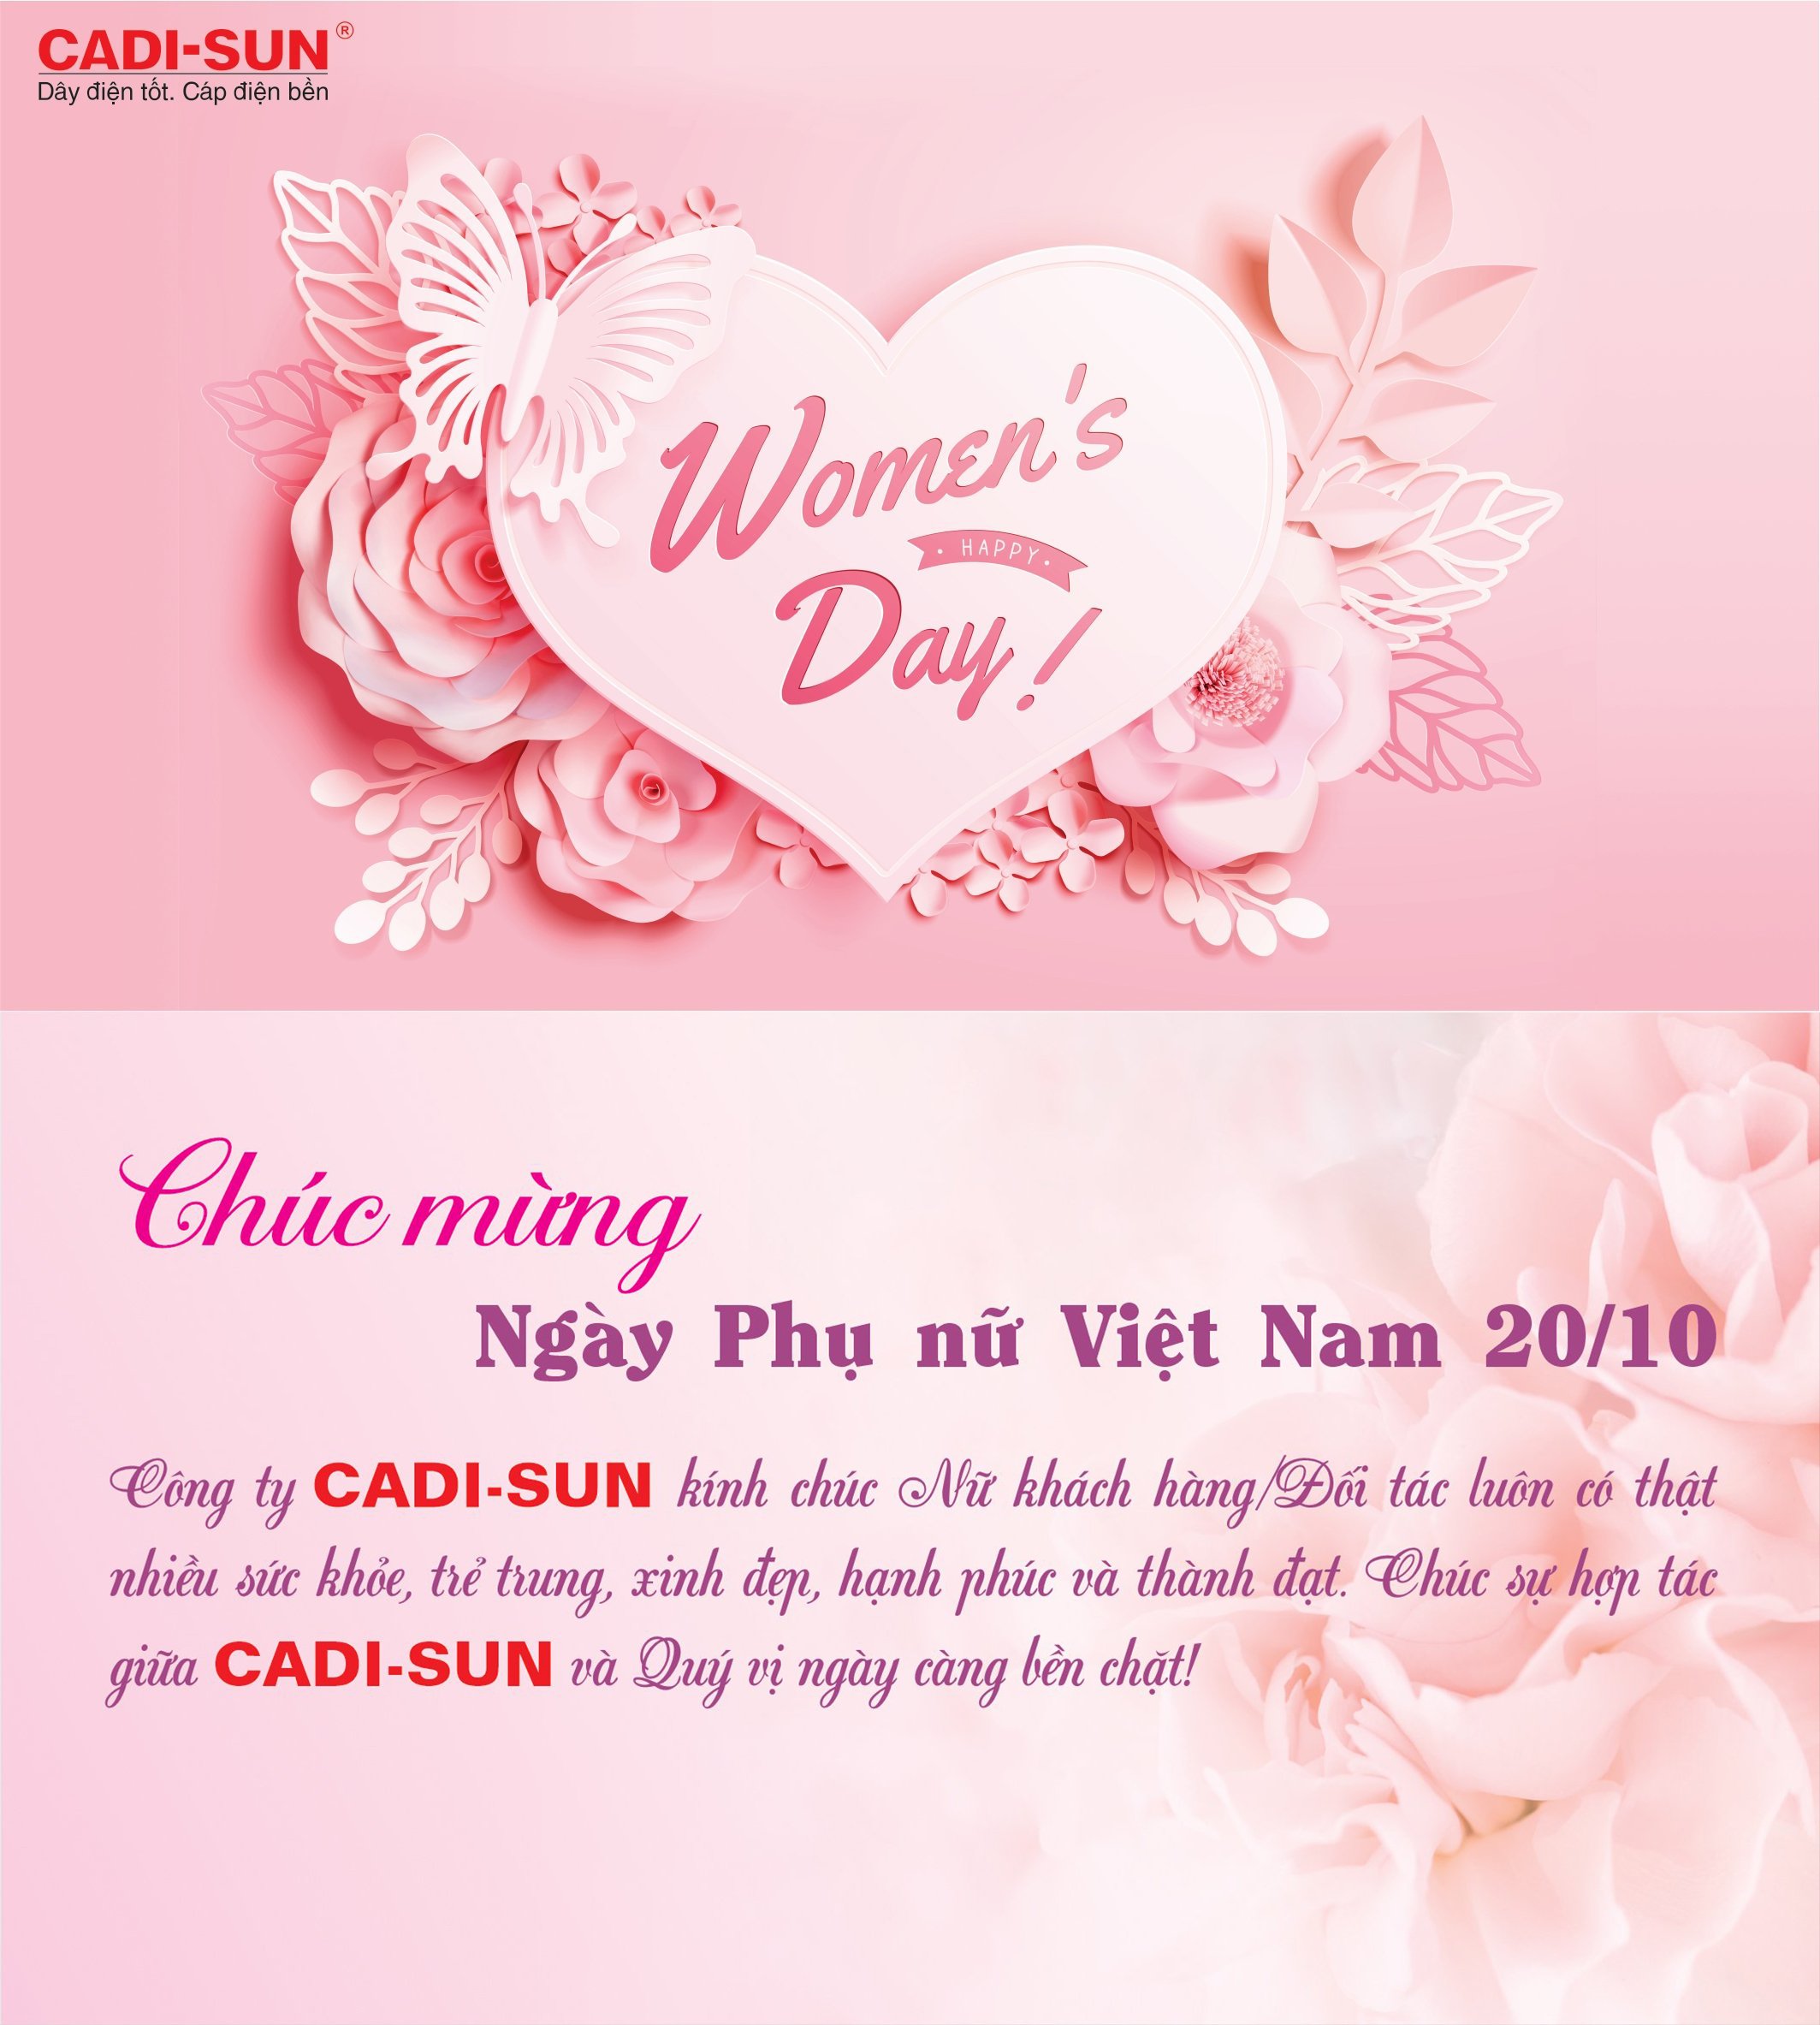 CADI-SUN chúc mừng Ngày Phụ nữ Việt Nam 20/10